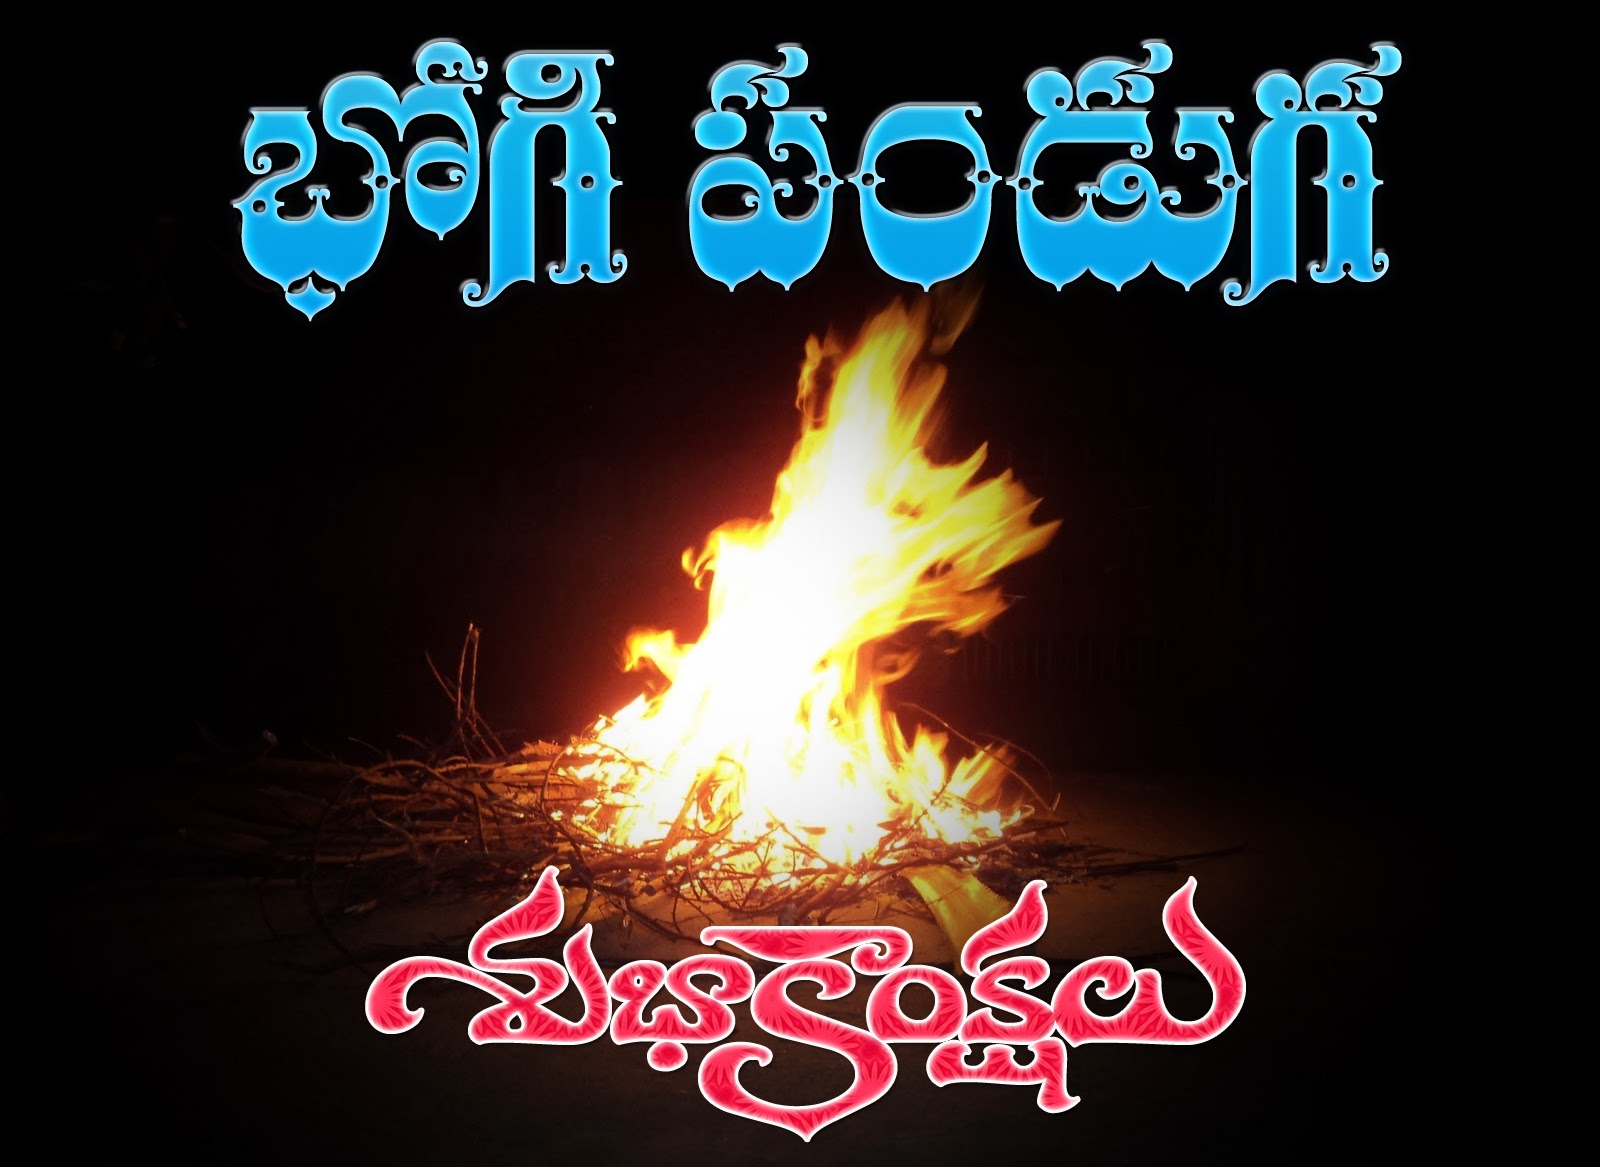 Telugu Bhogi Wishes images download